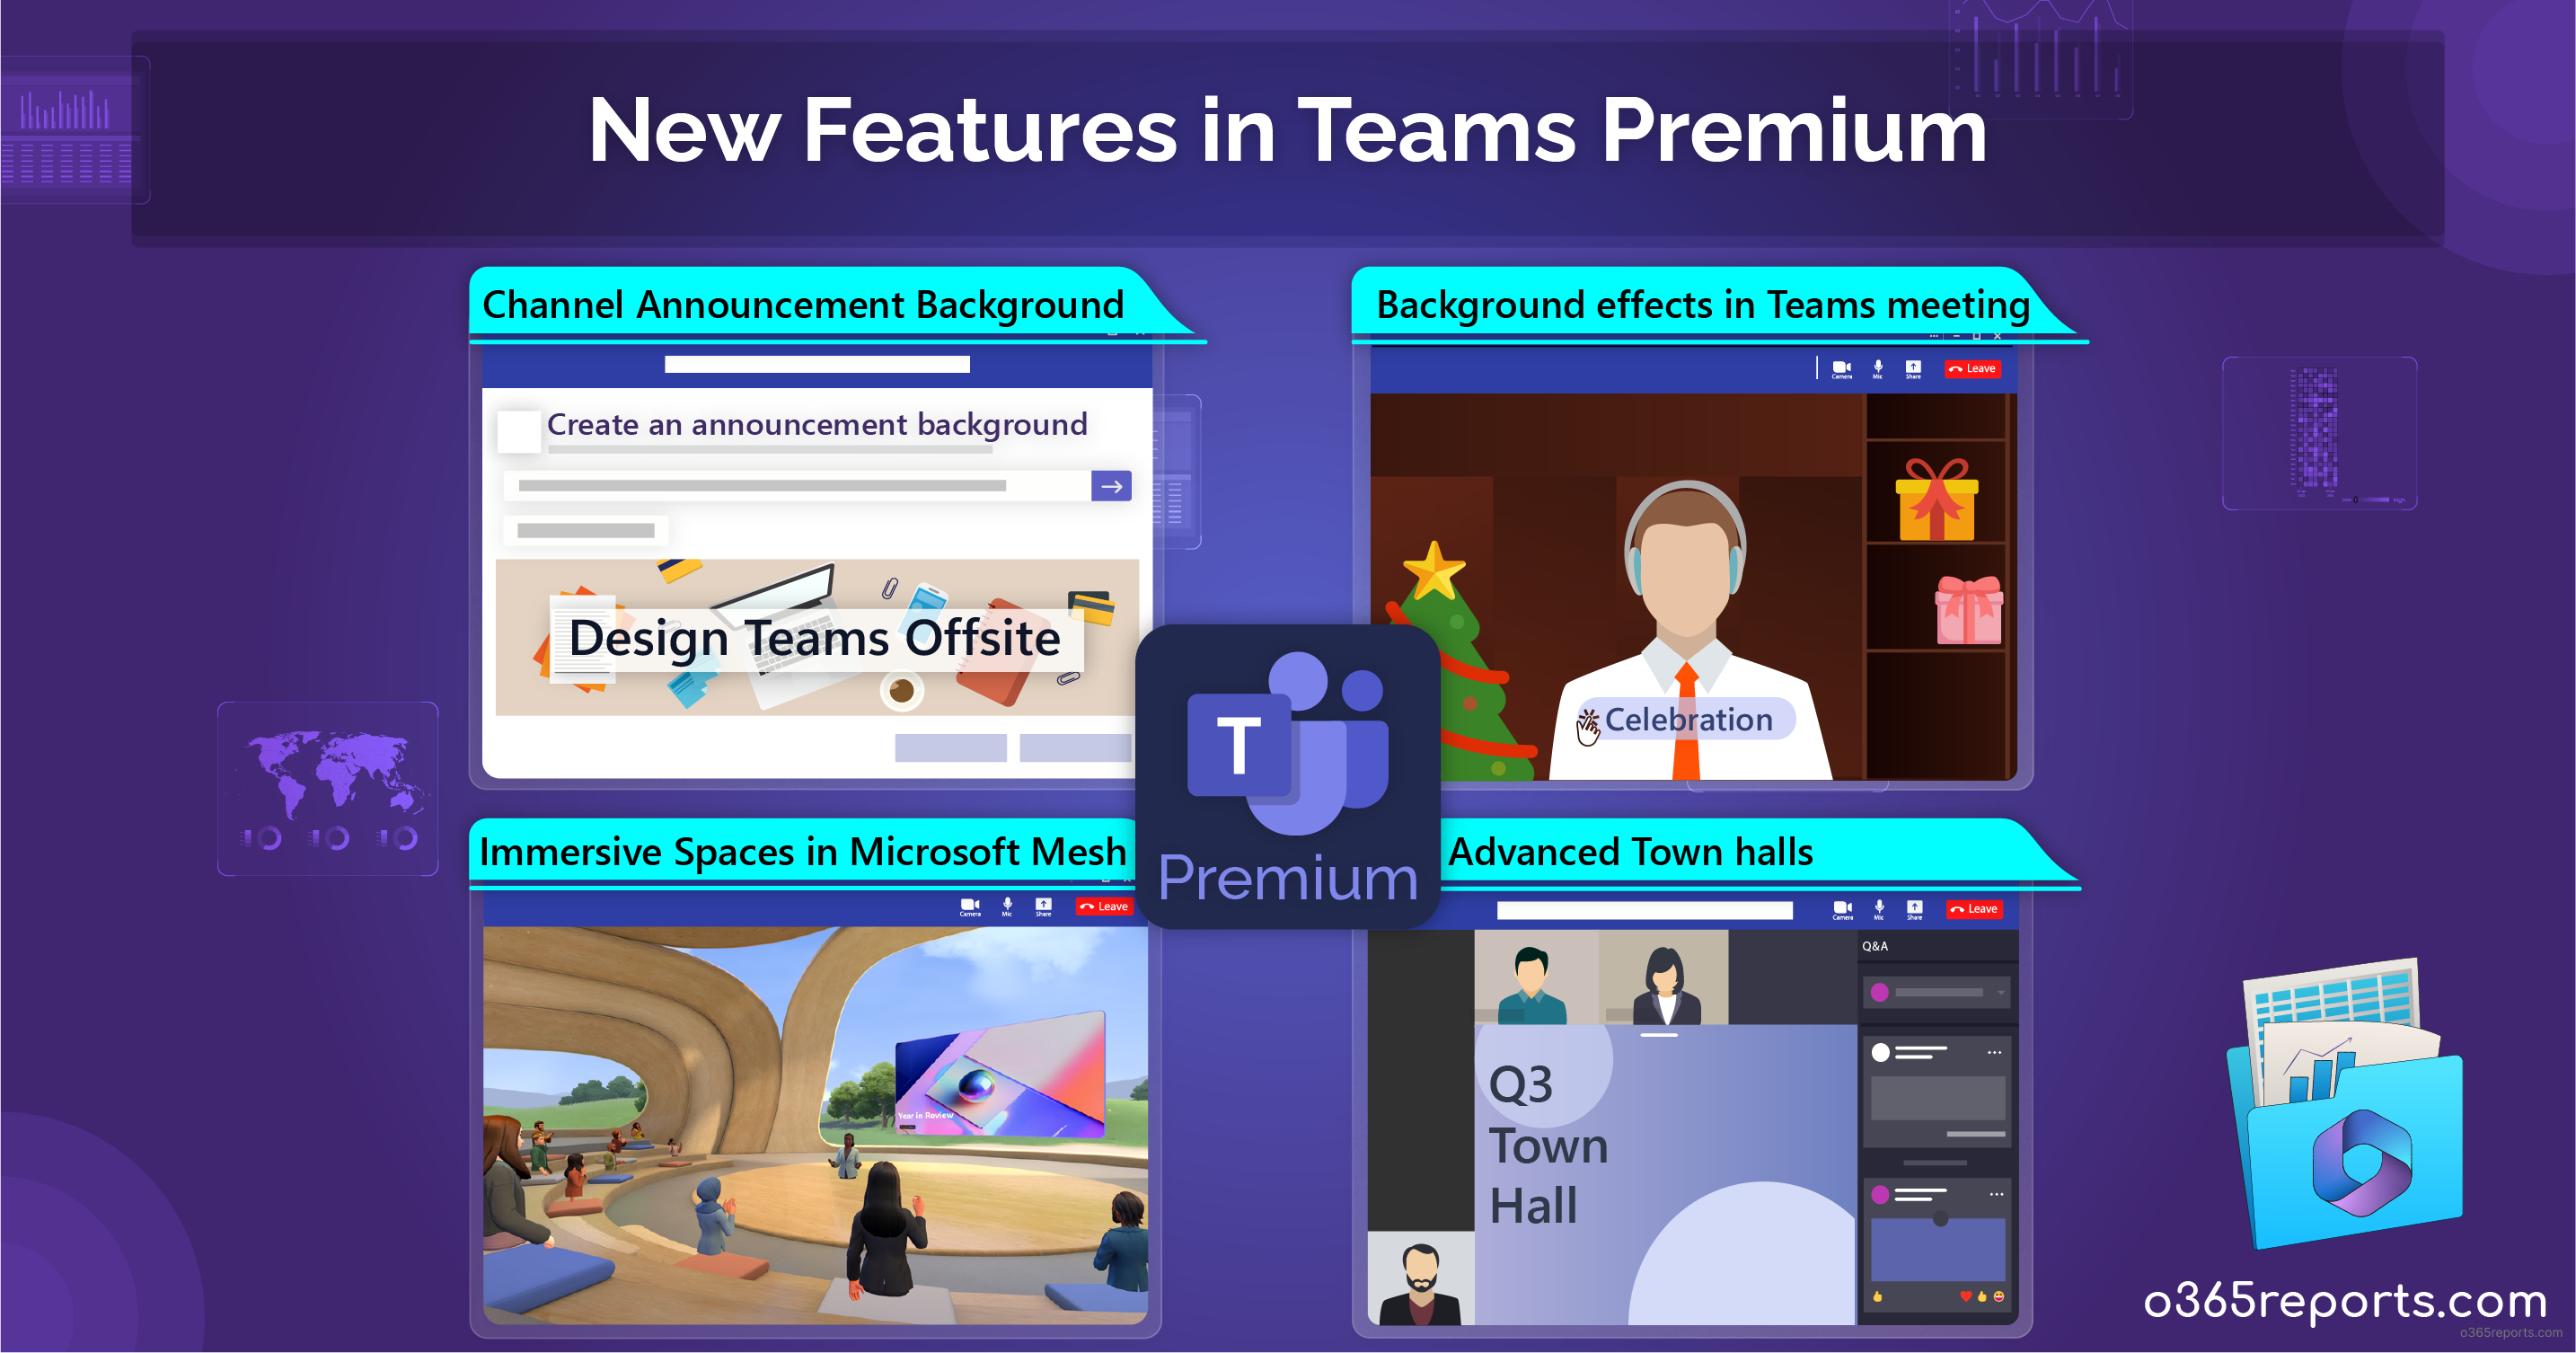 Descrição geral do Microsoft Teams Premium - Suporte da Microsoft